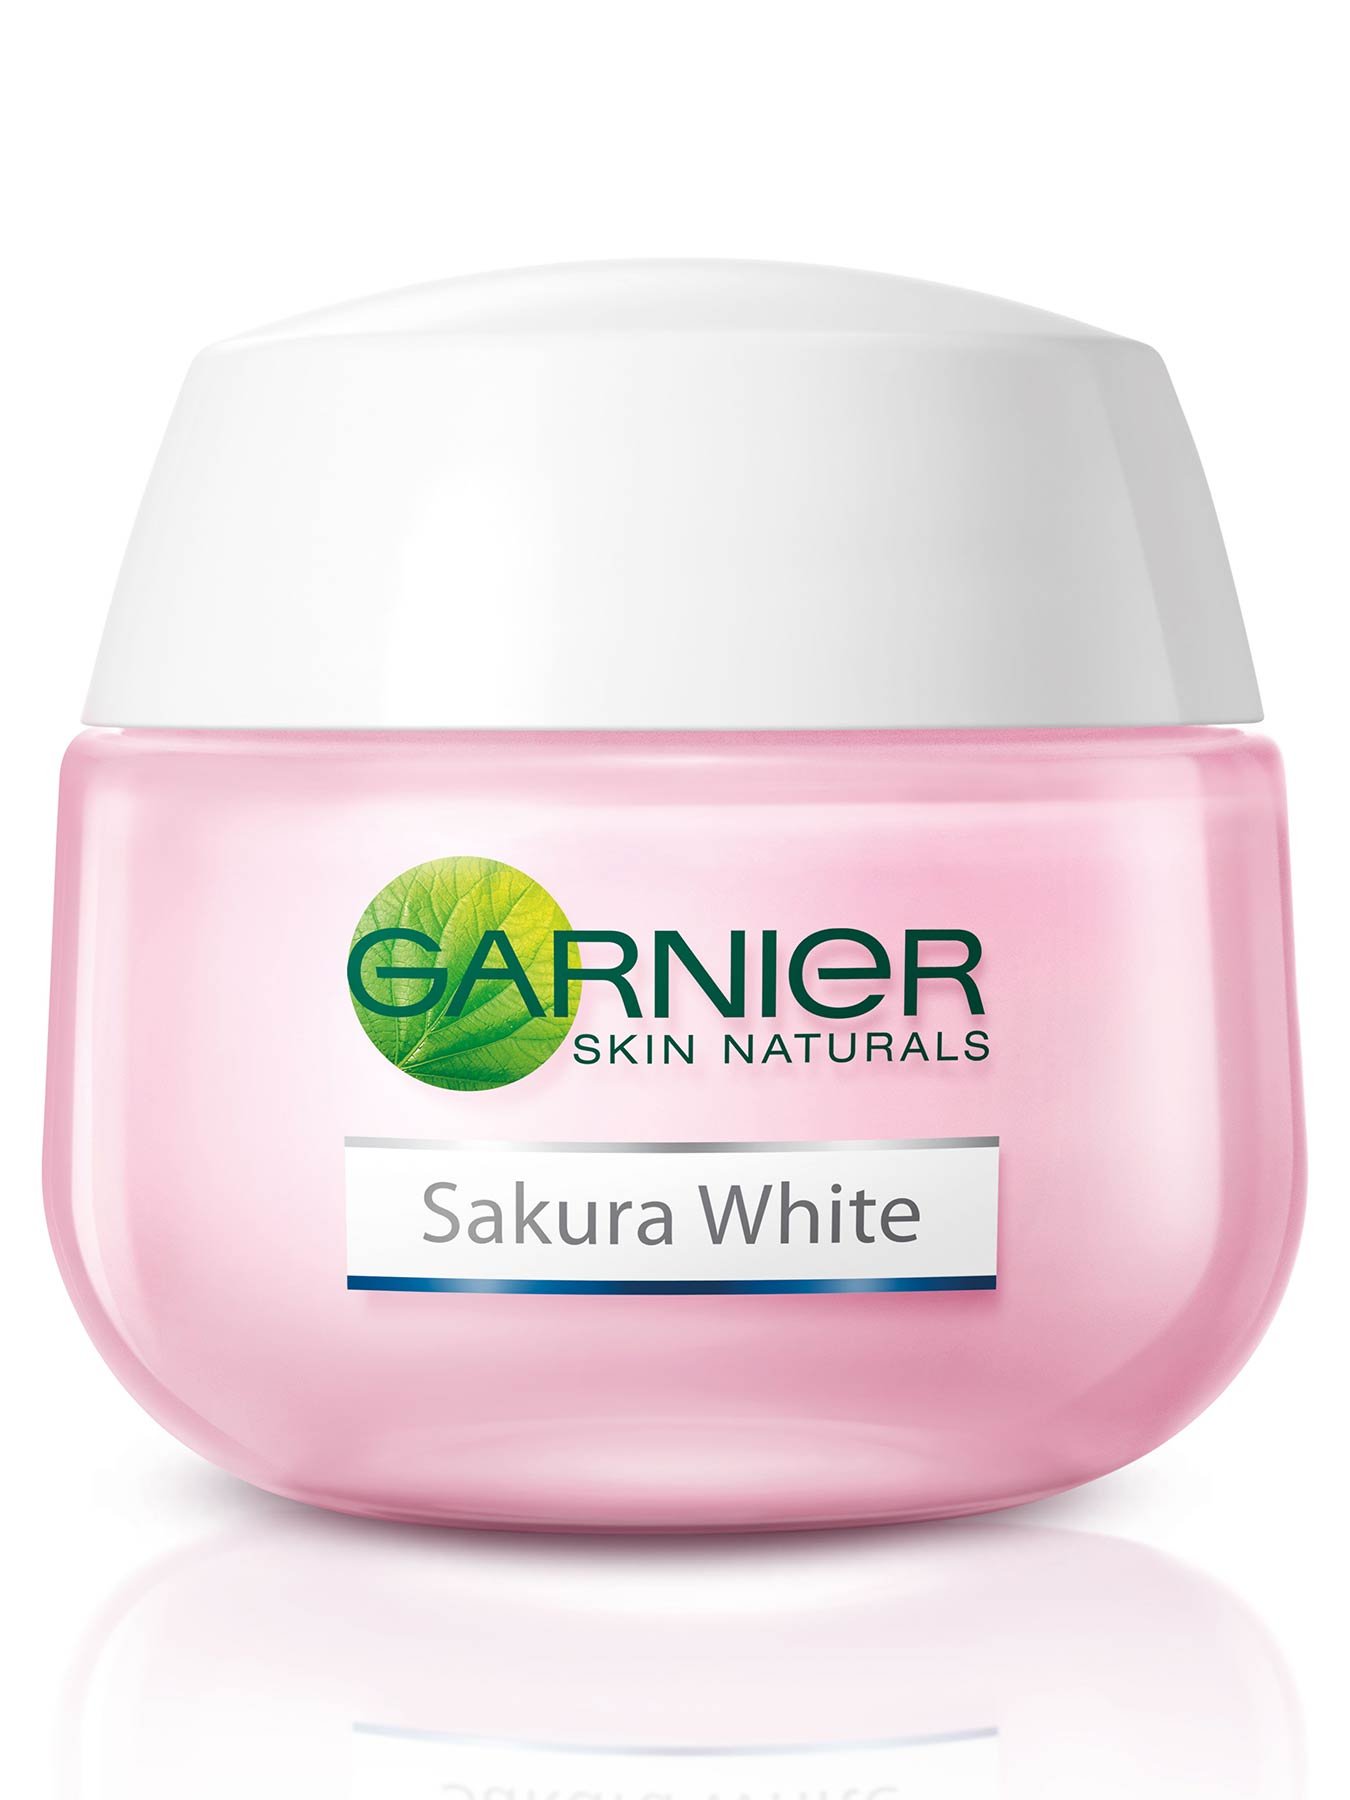 Sakura White Night Cream  20ml Krim Malam Garnier